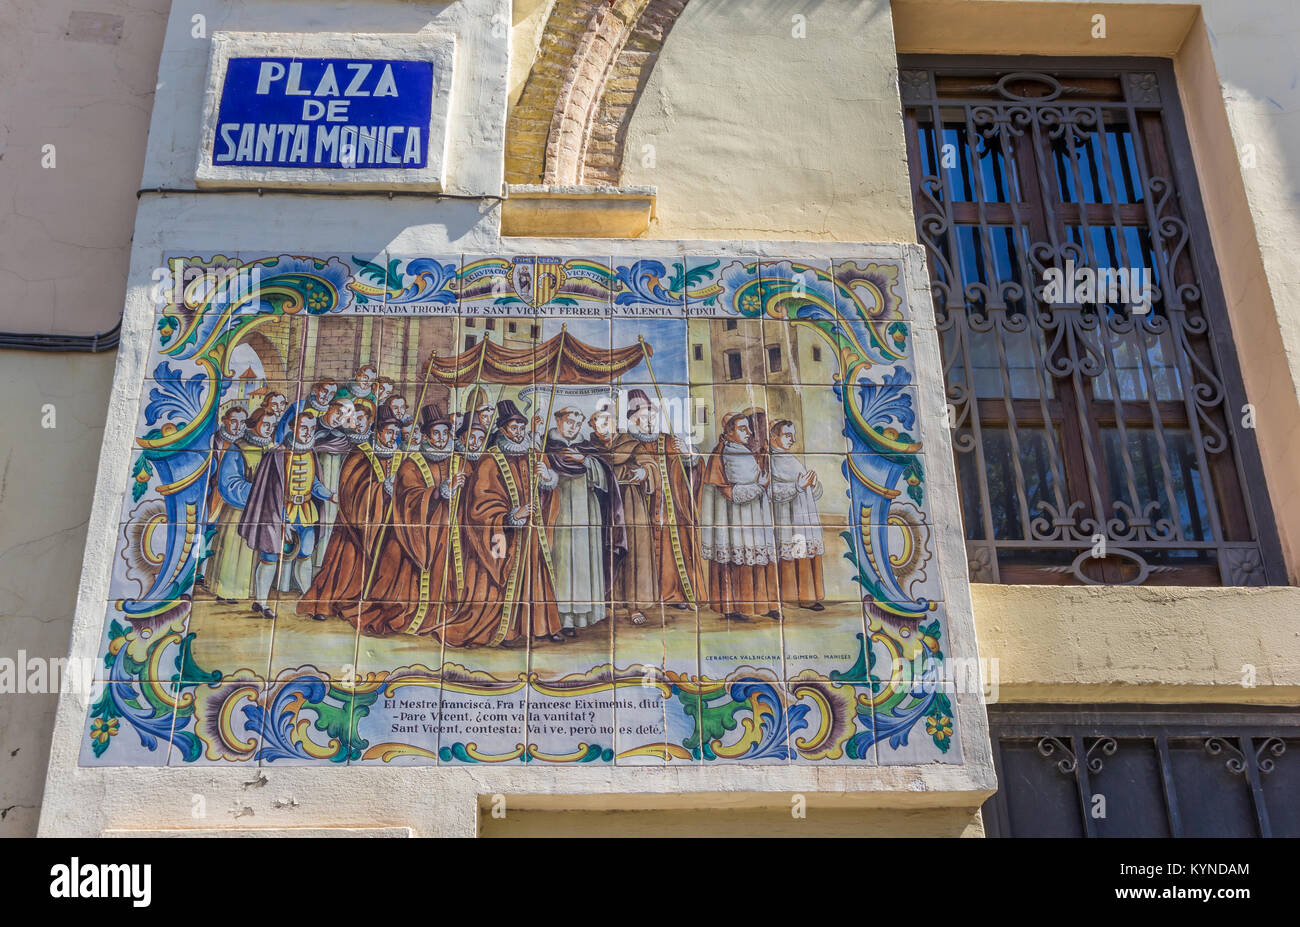 Scène religieuse dans des carreaux de céramique à Valence, Espagne Banque D'Images